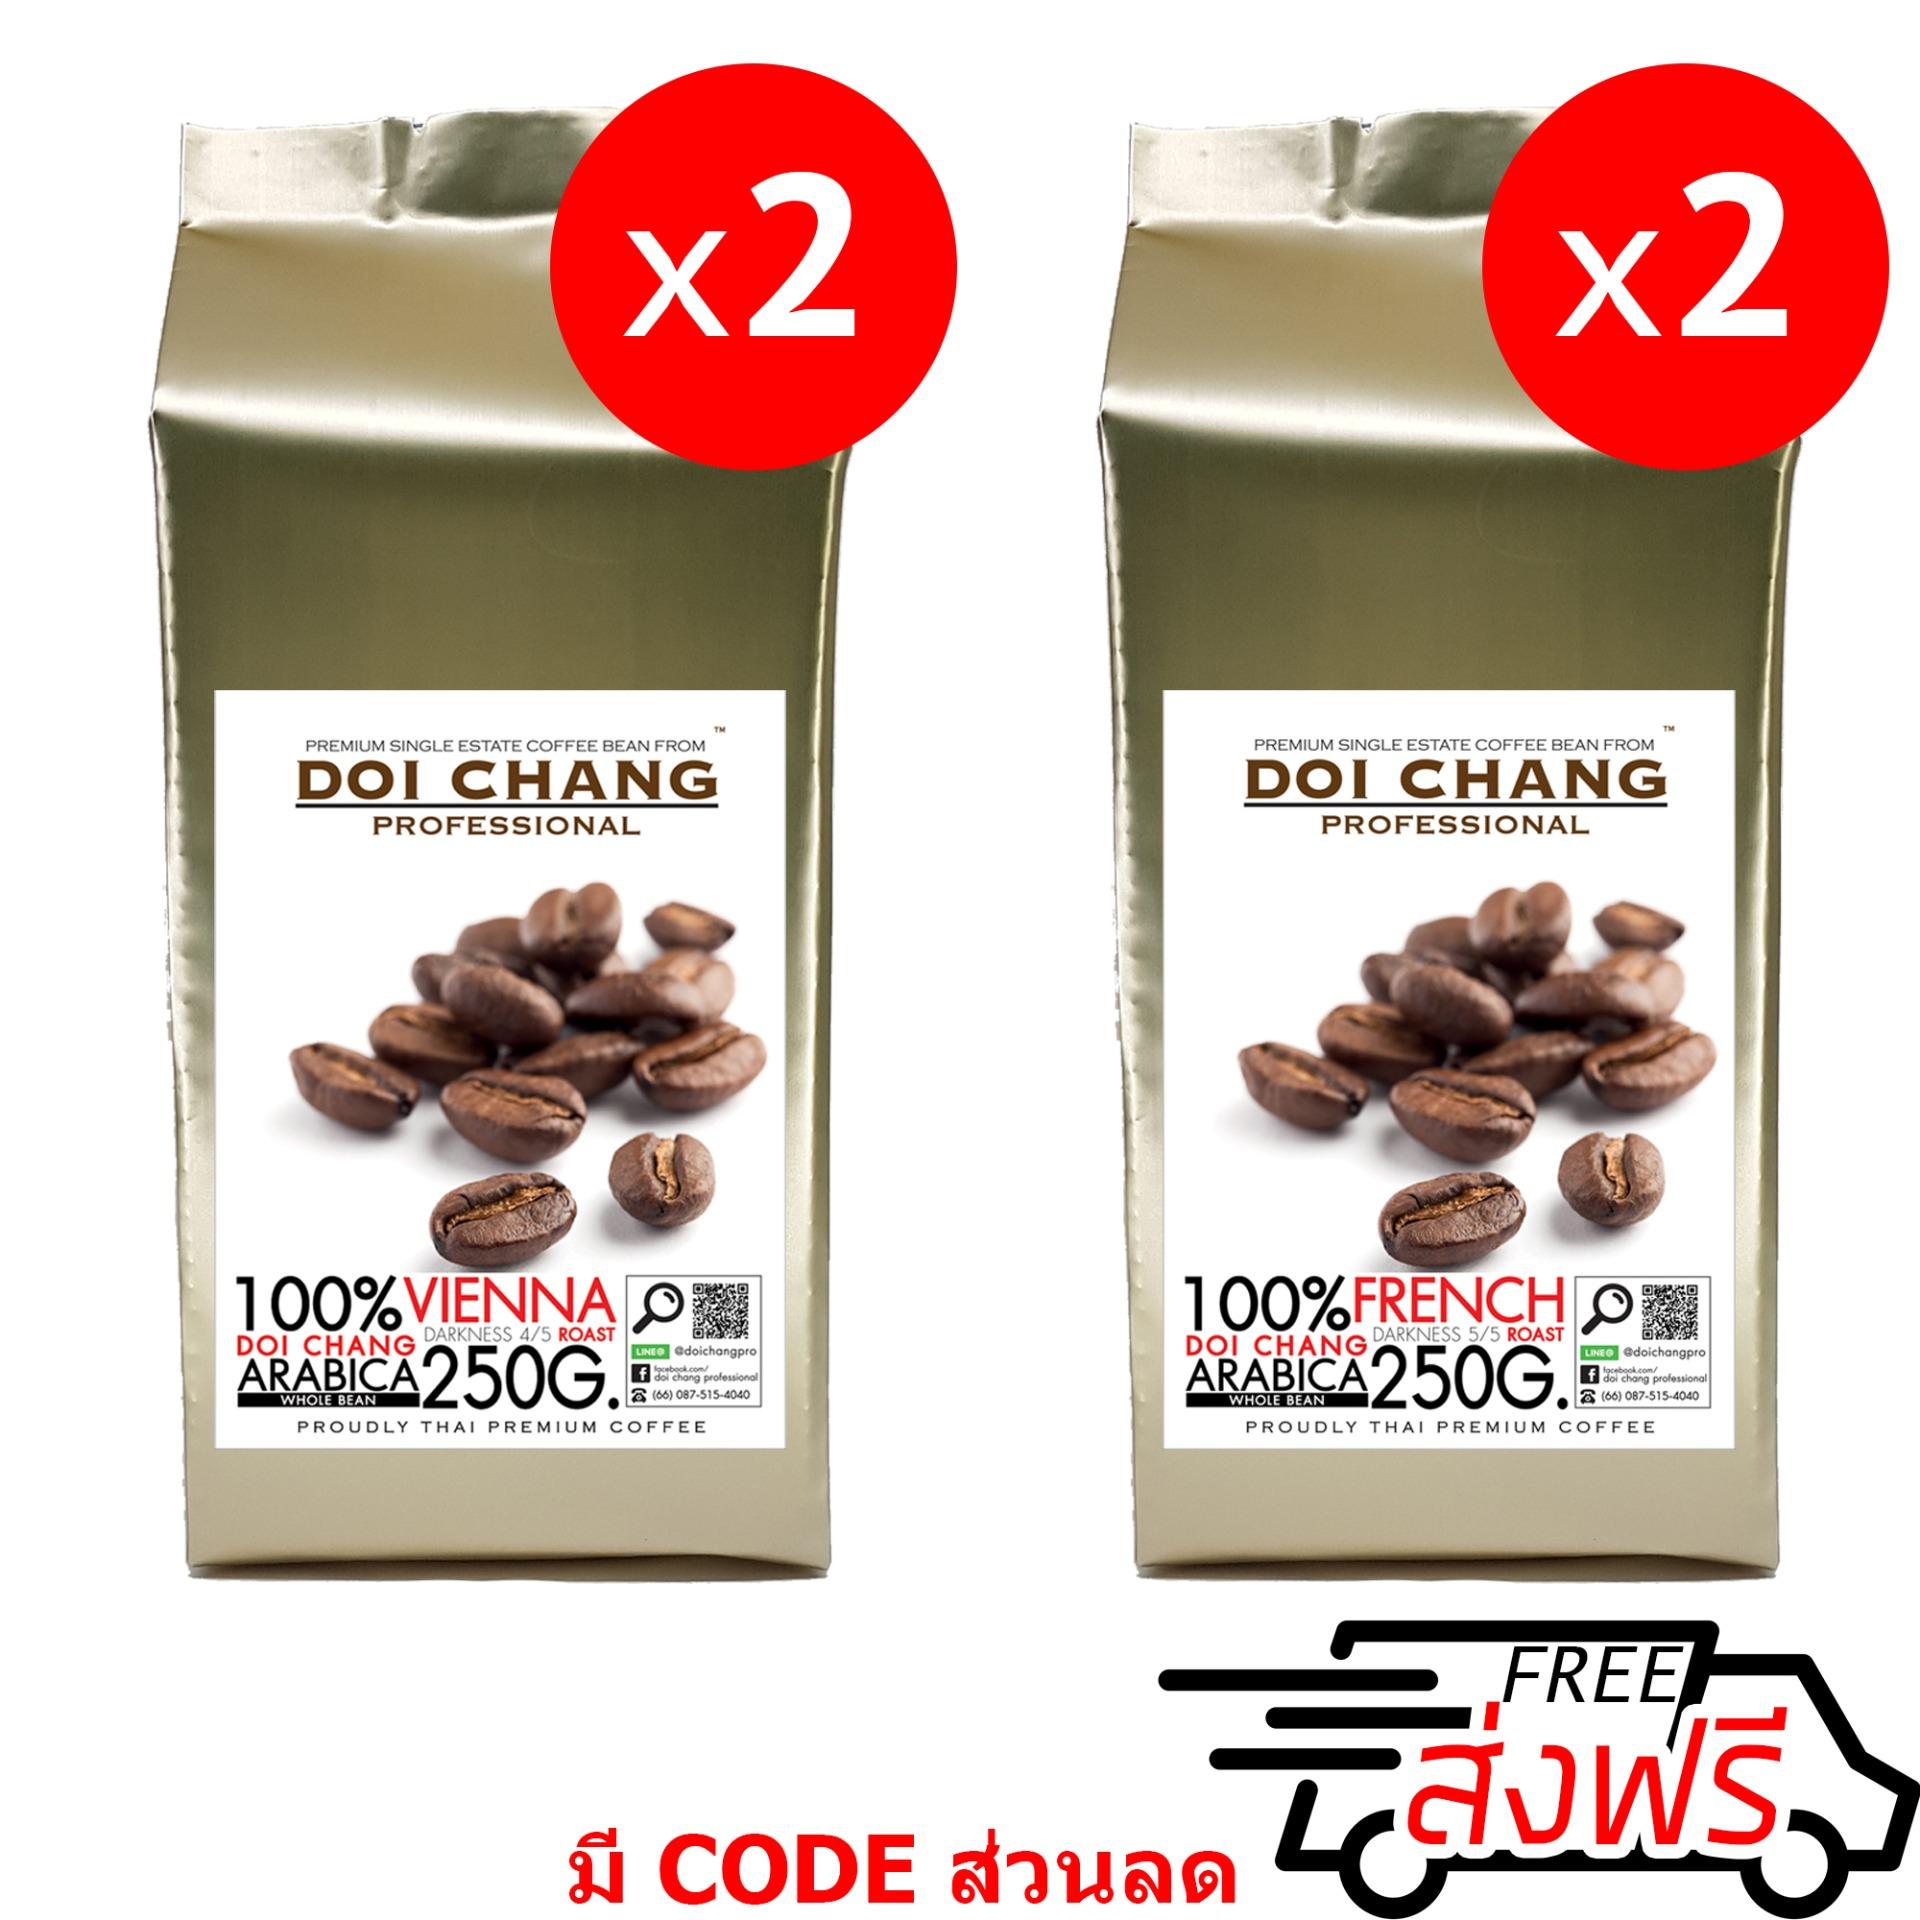 กาแฟอราบิก้า ดอยช้าง คั่วกลาง 2 ถุง+คั่วเข้ม 2 ถุง Vienna 2 bag + French 2 bag รวม 1 kg.(4x250g.) Doi Chang Professional แบบเมล็ด Doi Chang Professional Roasted Coffee Whole Bean เมล็ดกาแฟ จาก เมล็ดกาแฟดอยช้าง (กาแฟสด)